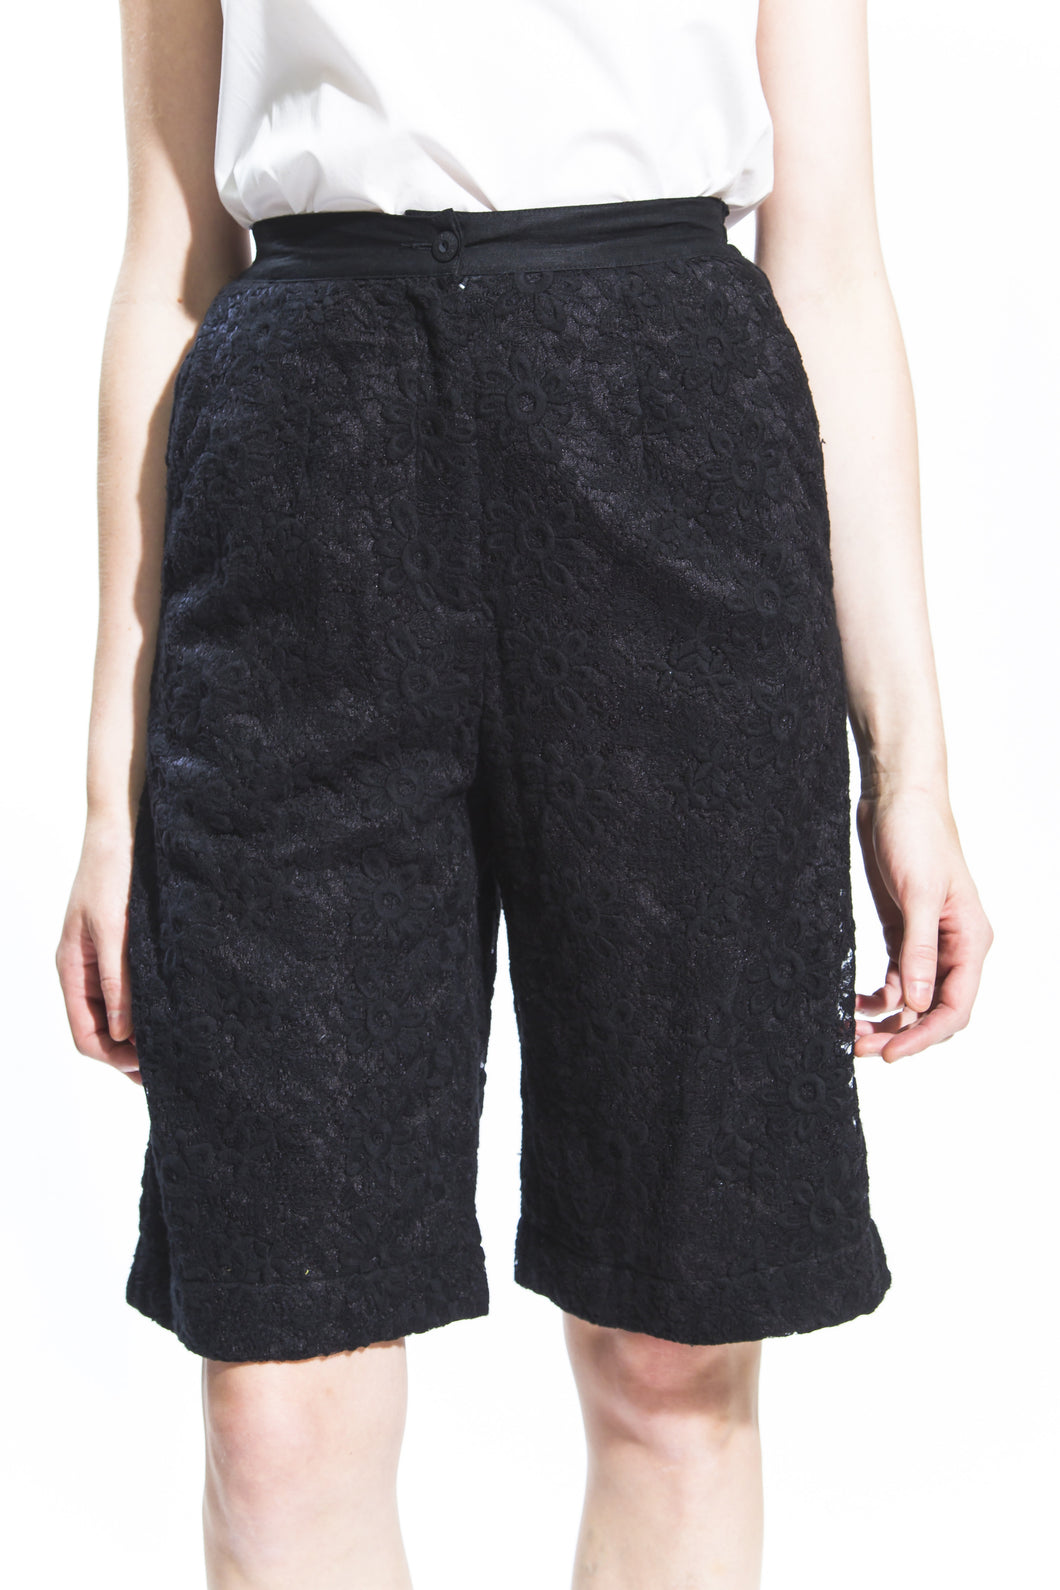 Black Lace Shorts Style #1232